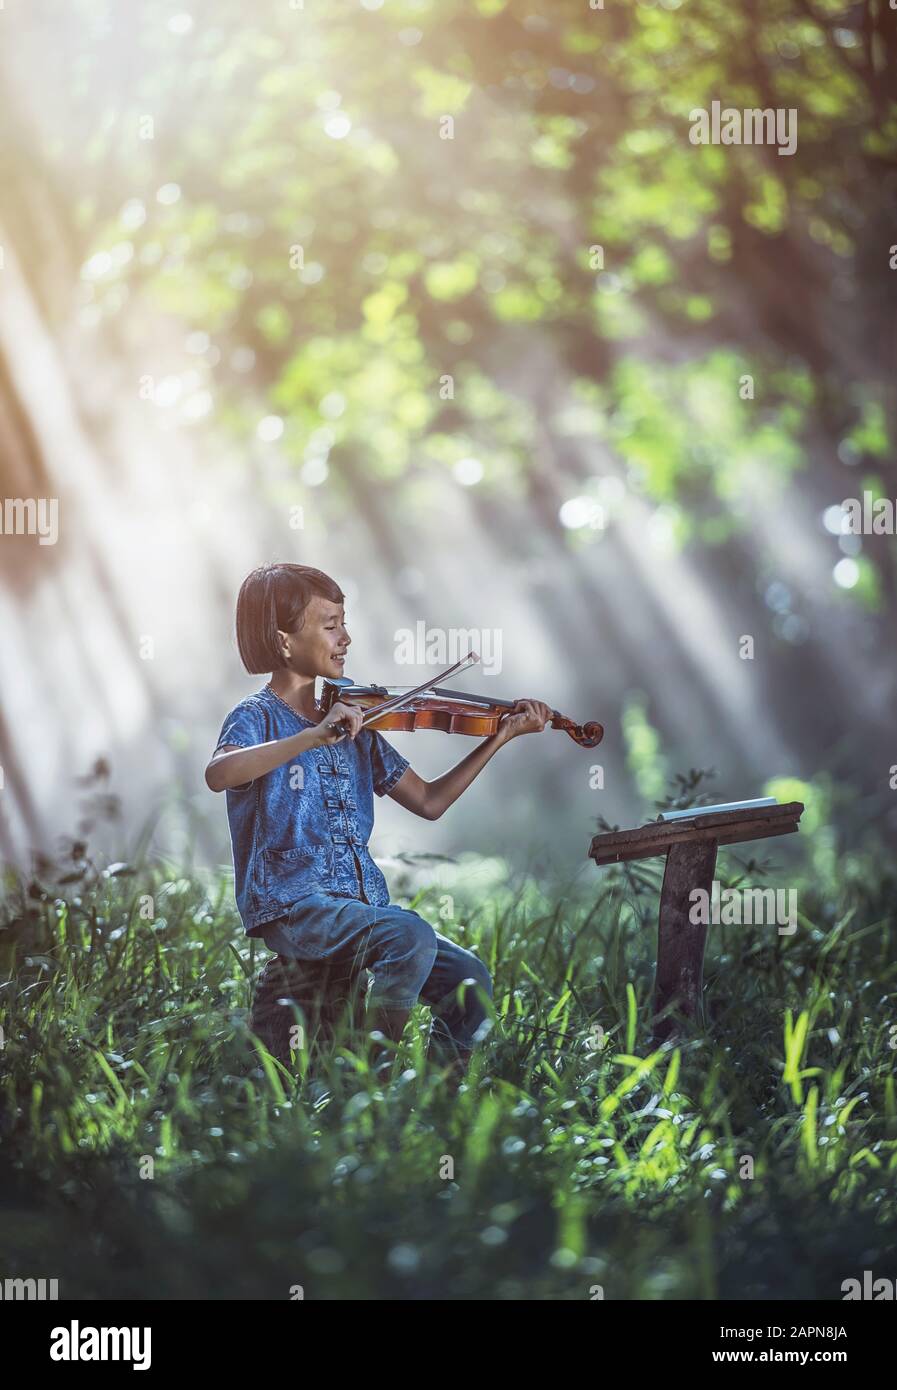 Petit enfant asiatique jouant au violon à l'extérieur Banque D'Images